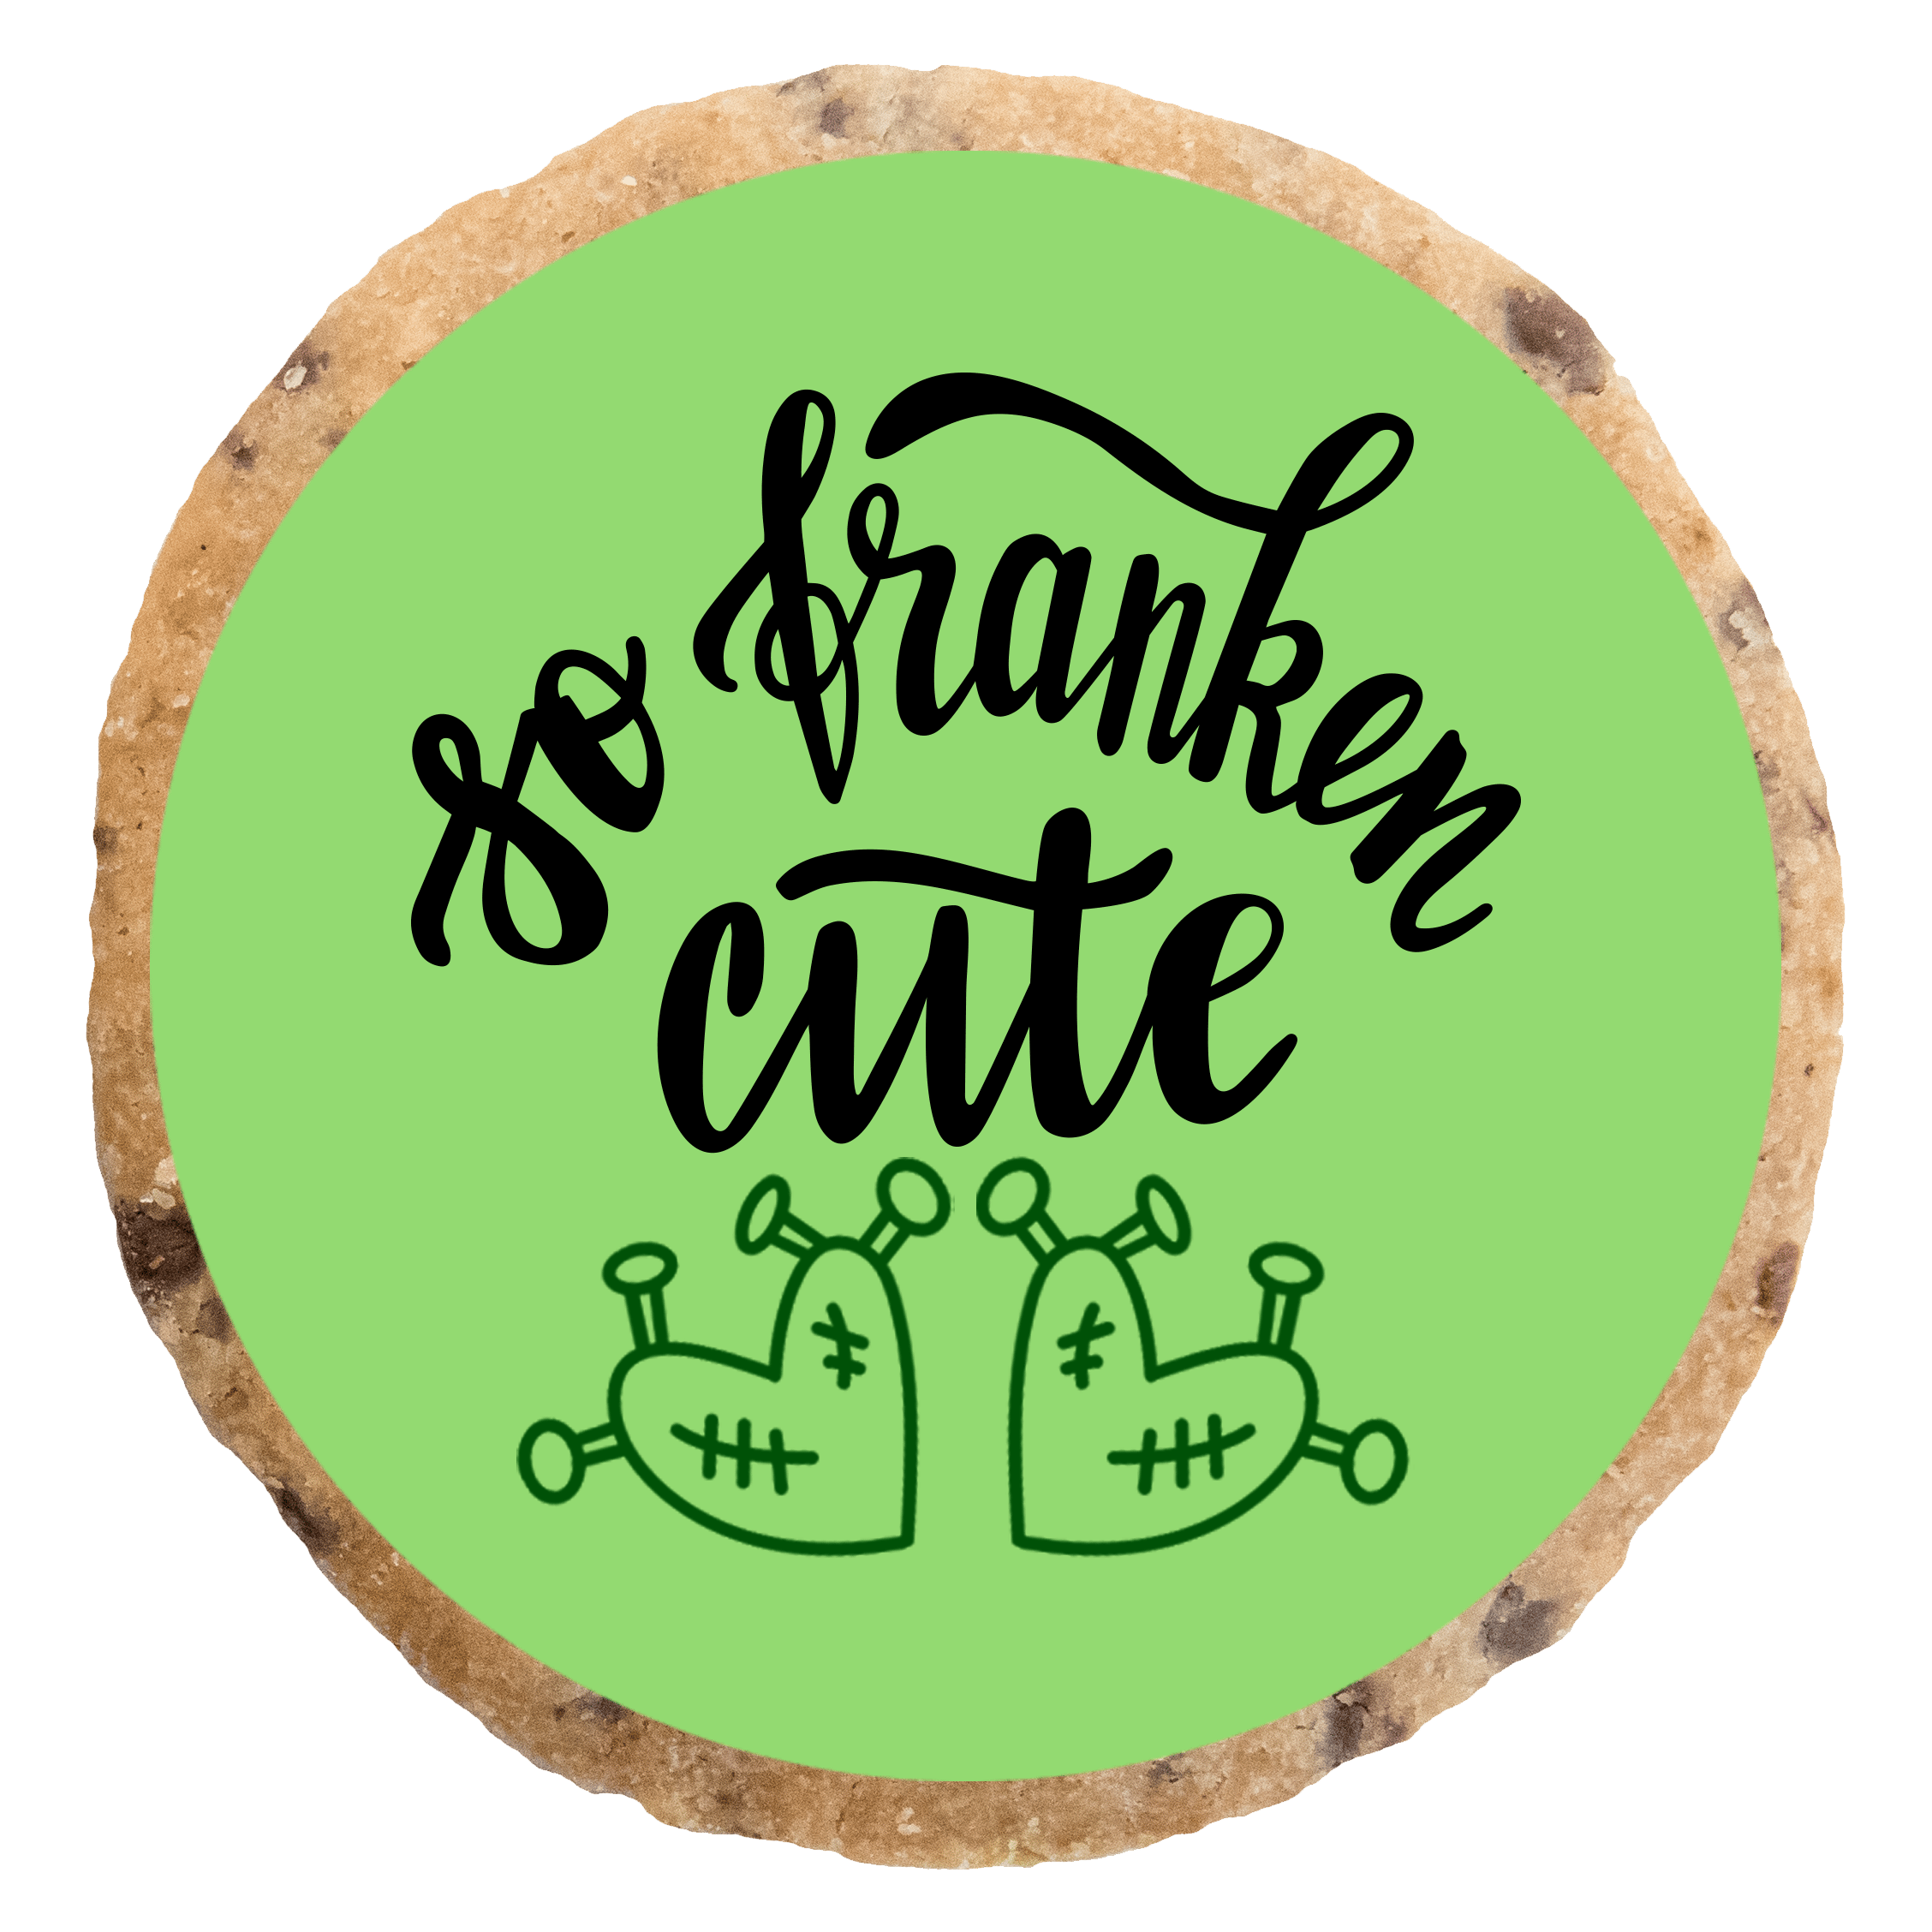 "So franken cute" MotivKEKS